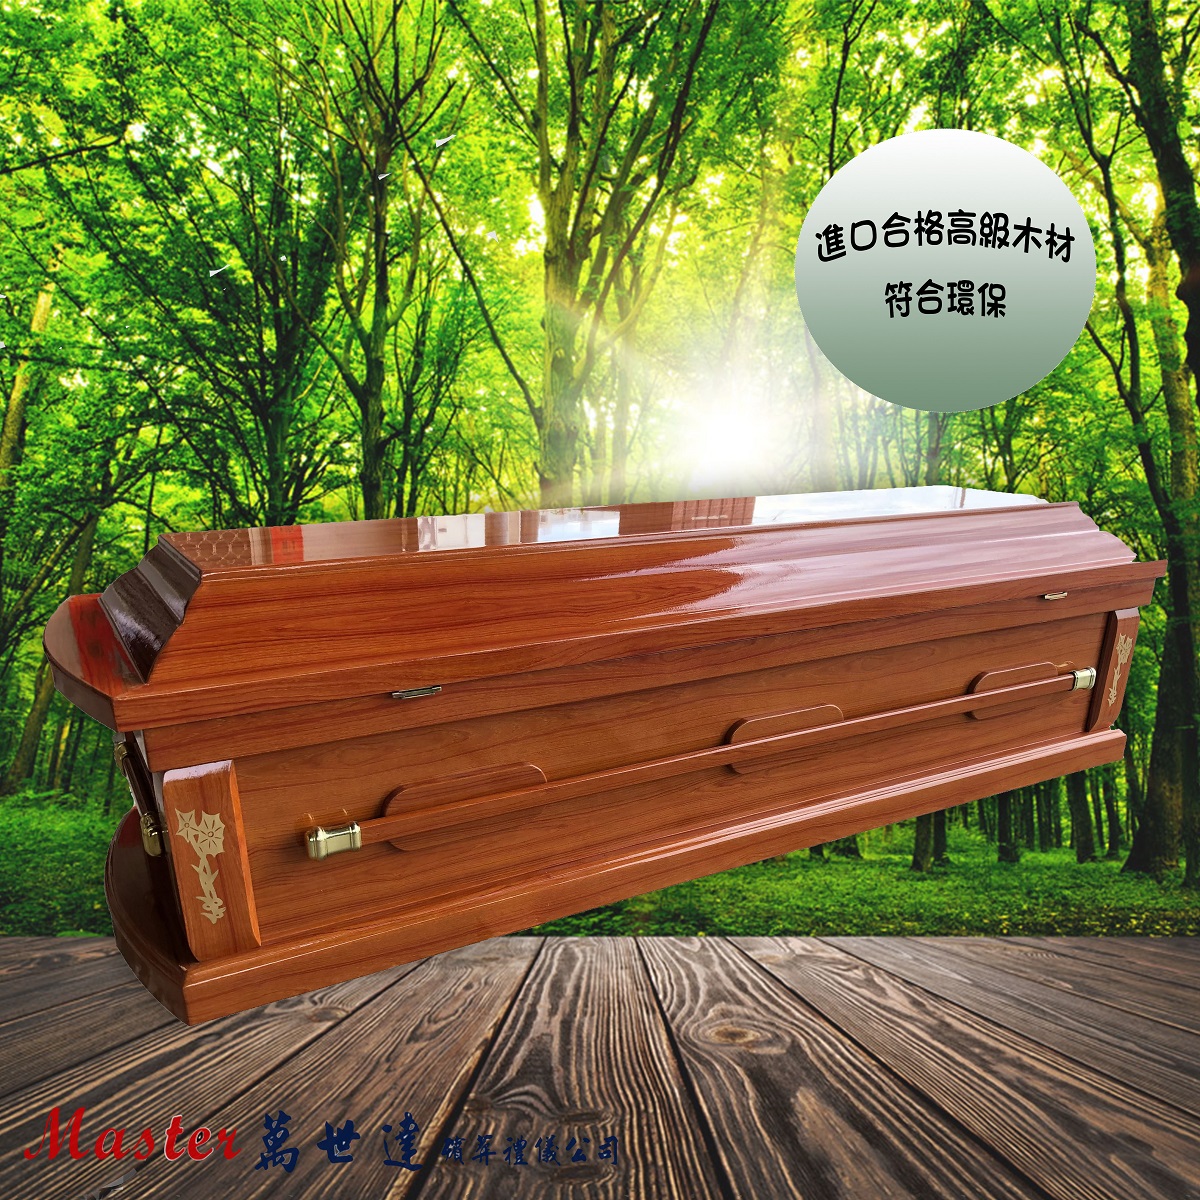 【入殮出】火化平蓋胡桃木扶手棺2.4尺